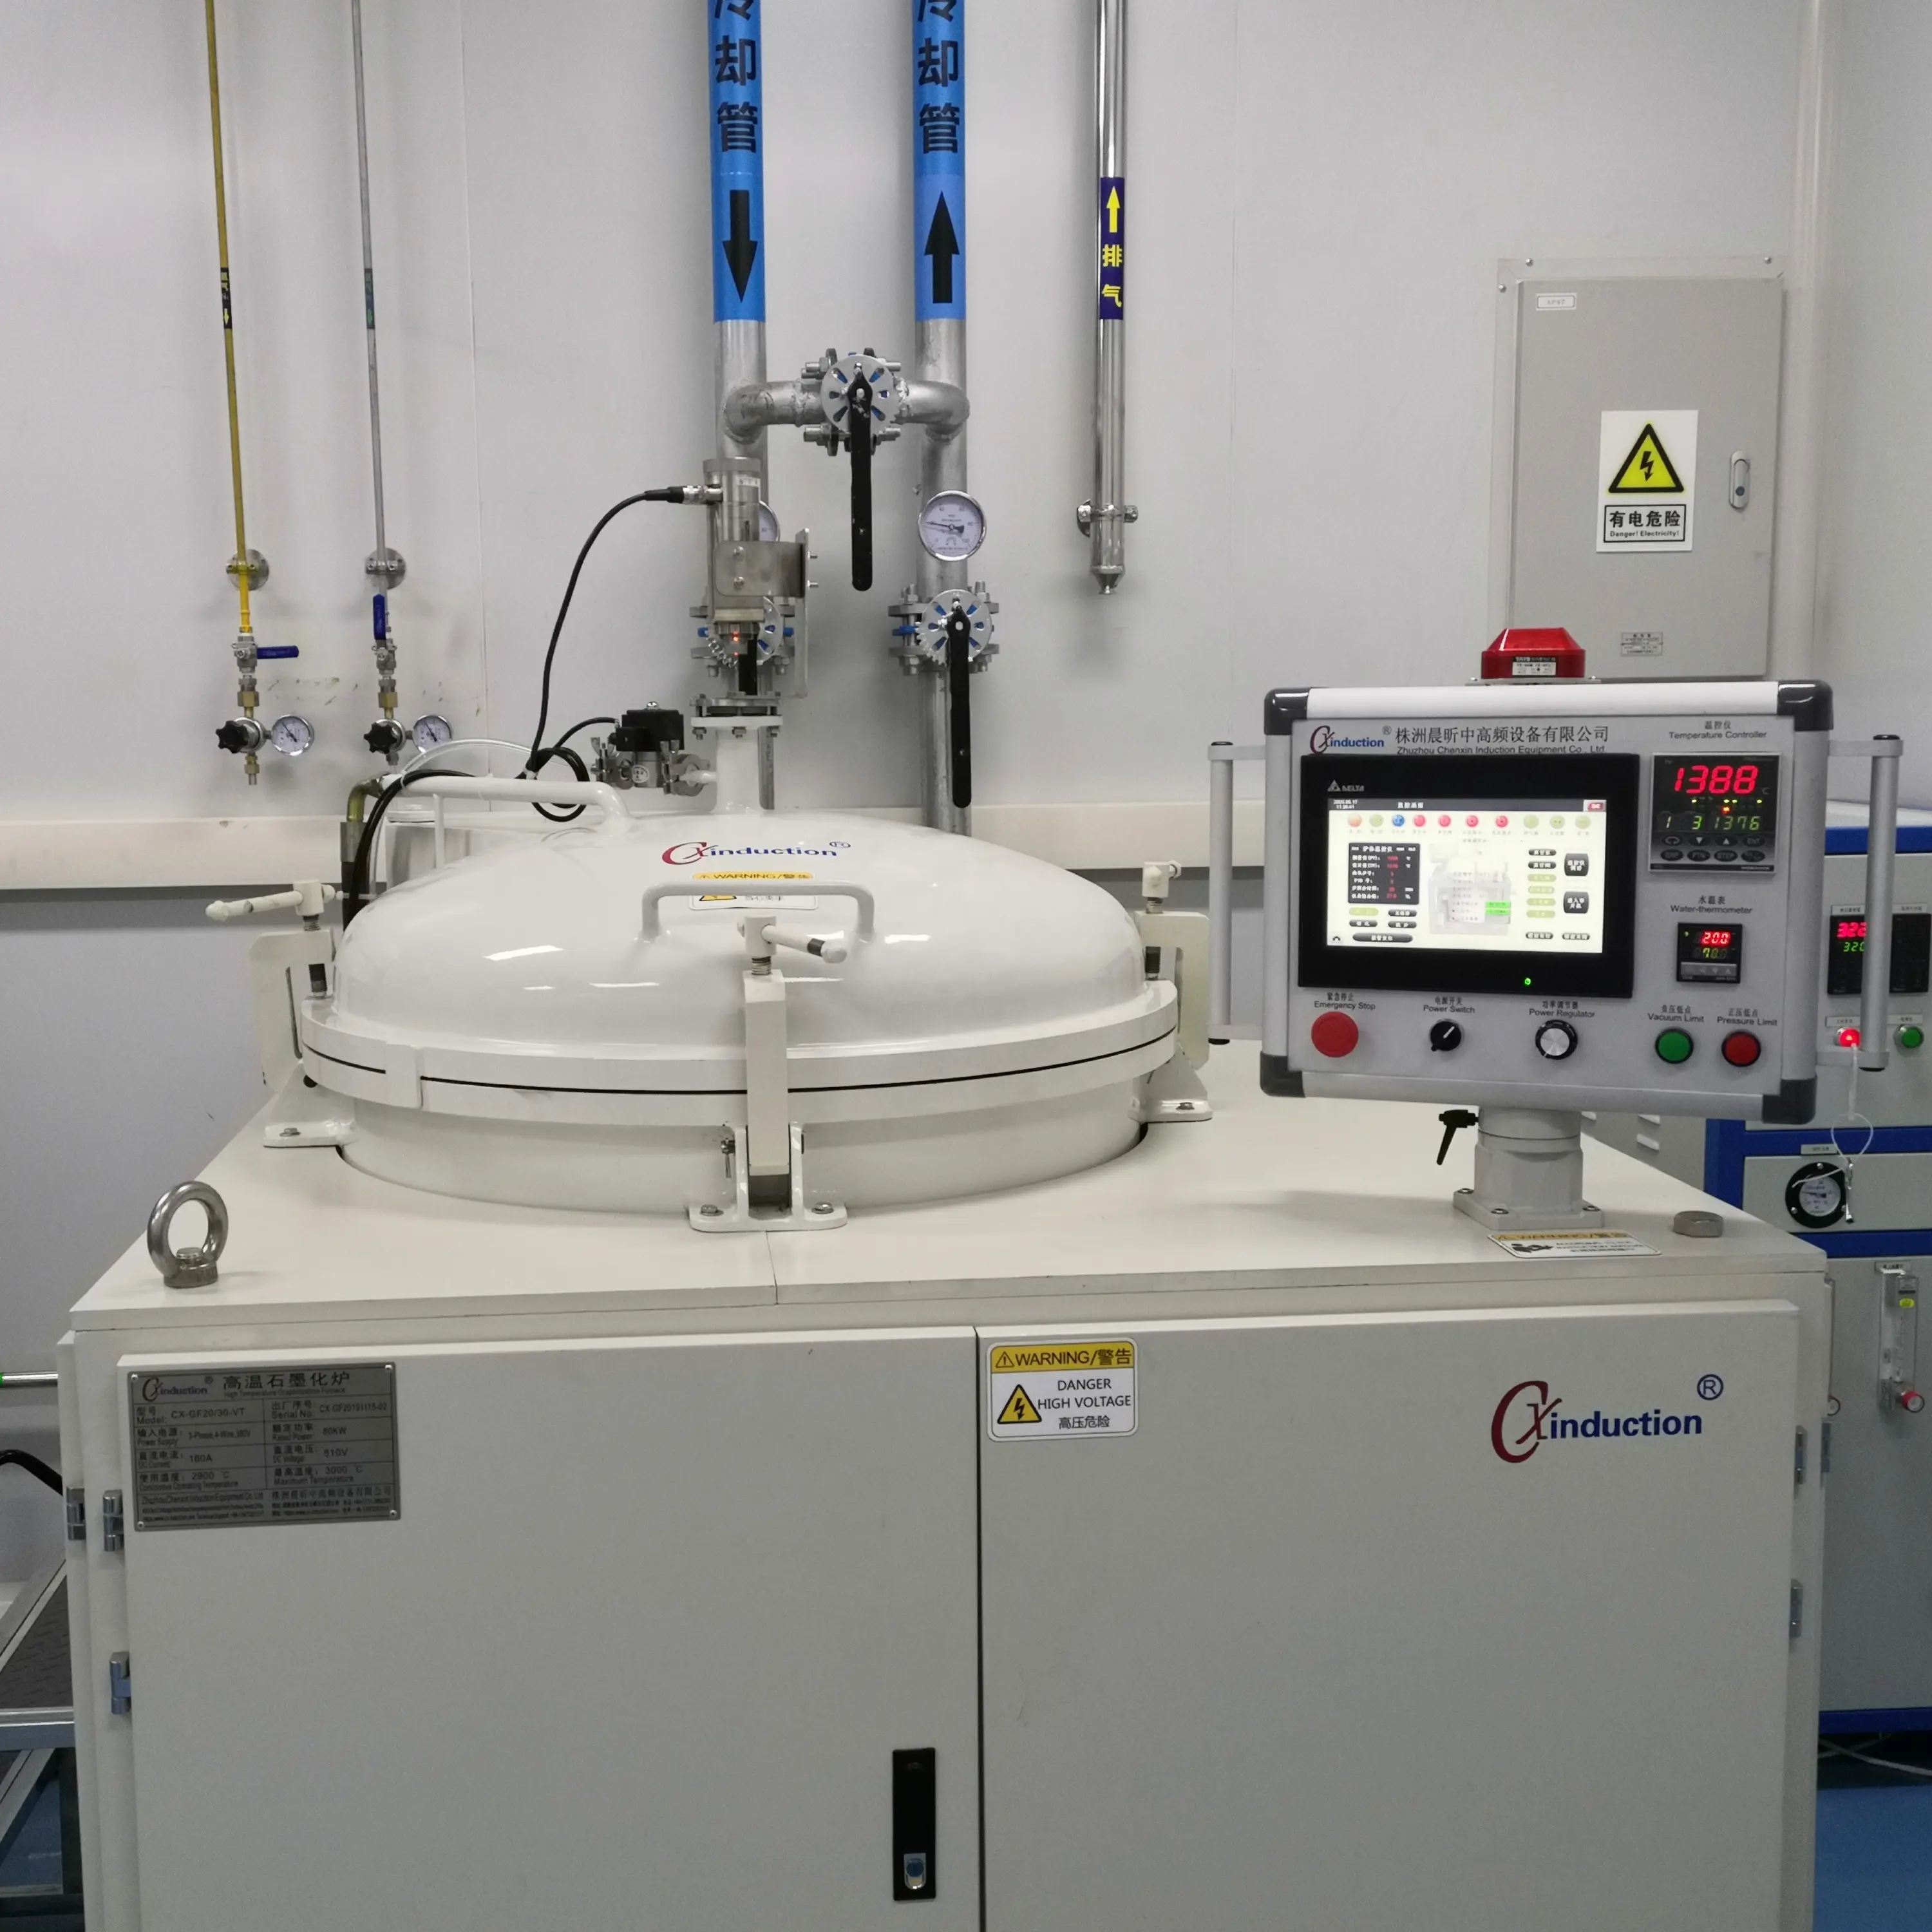 Horno de grafito para uso en laboratorio universitario, con certificación CE ISO 3000C, con control preciso de la temperatura